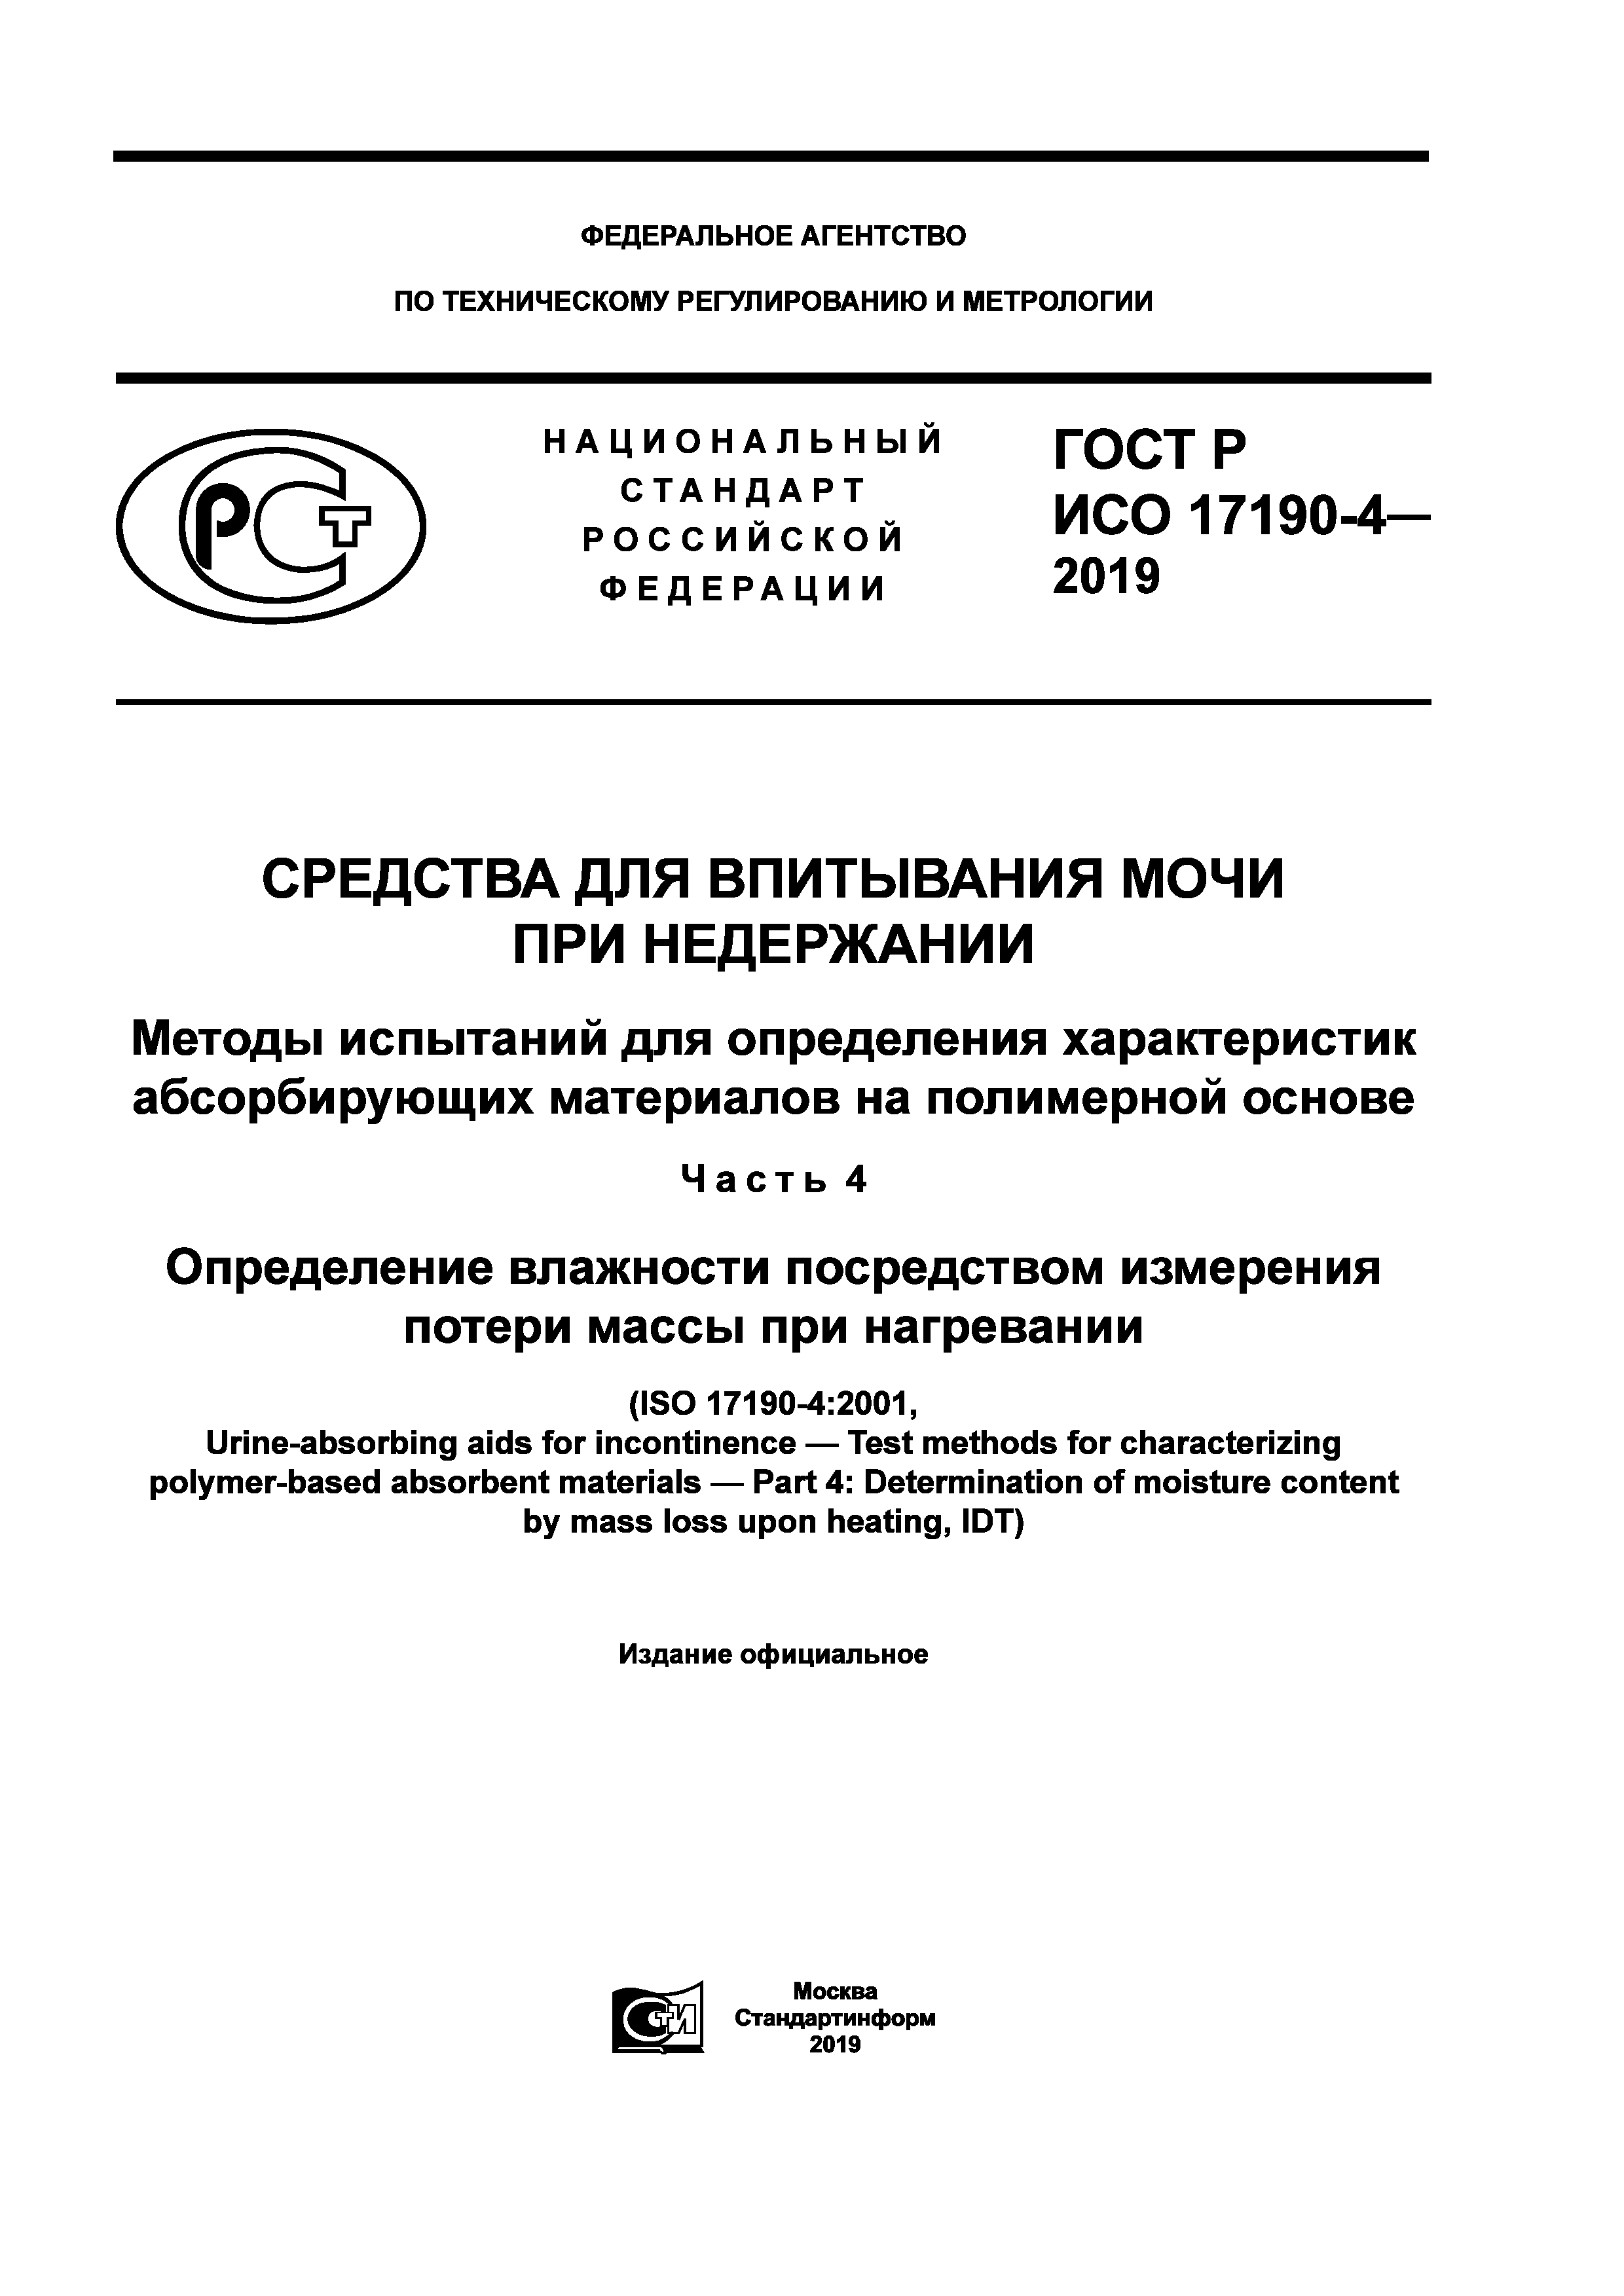 ГОСТ Р ИСО 17190-4-2019